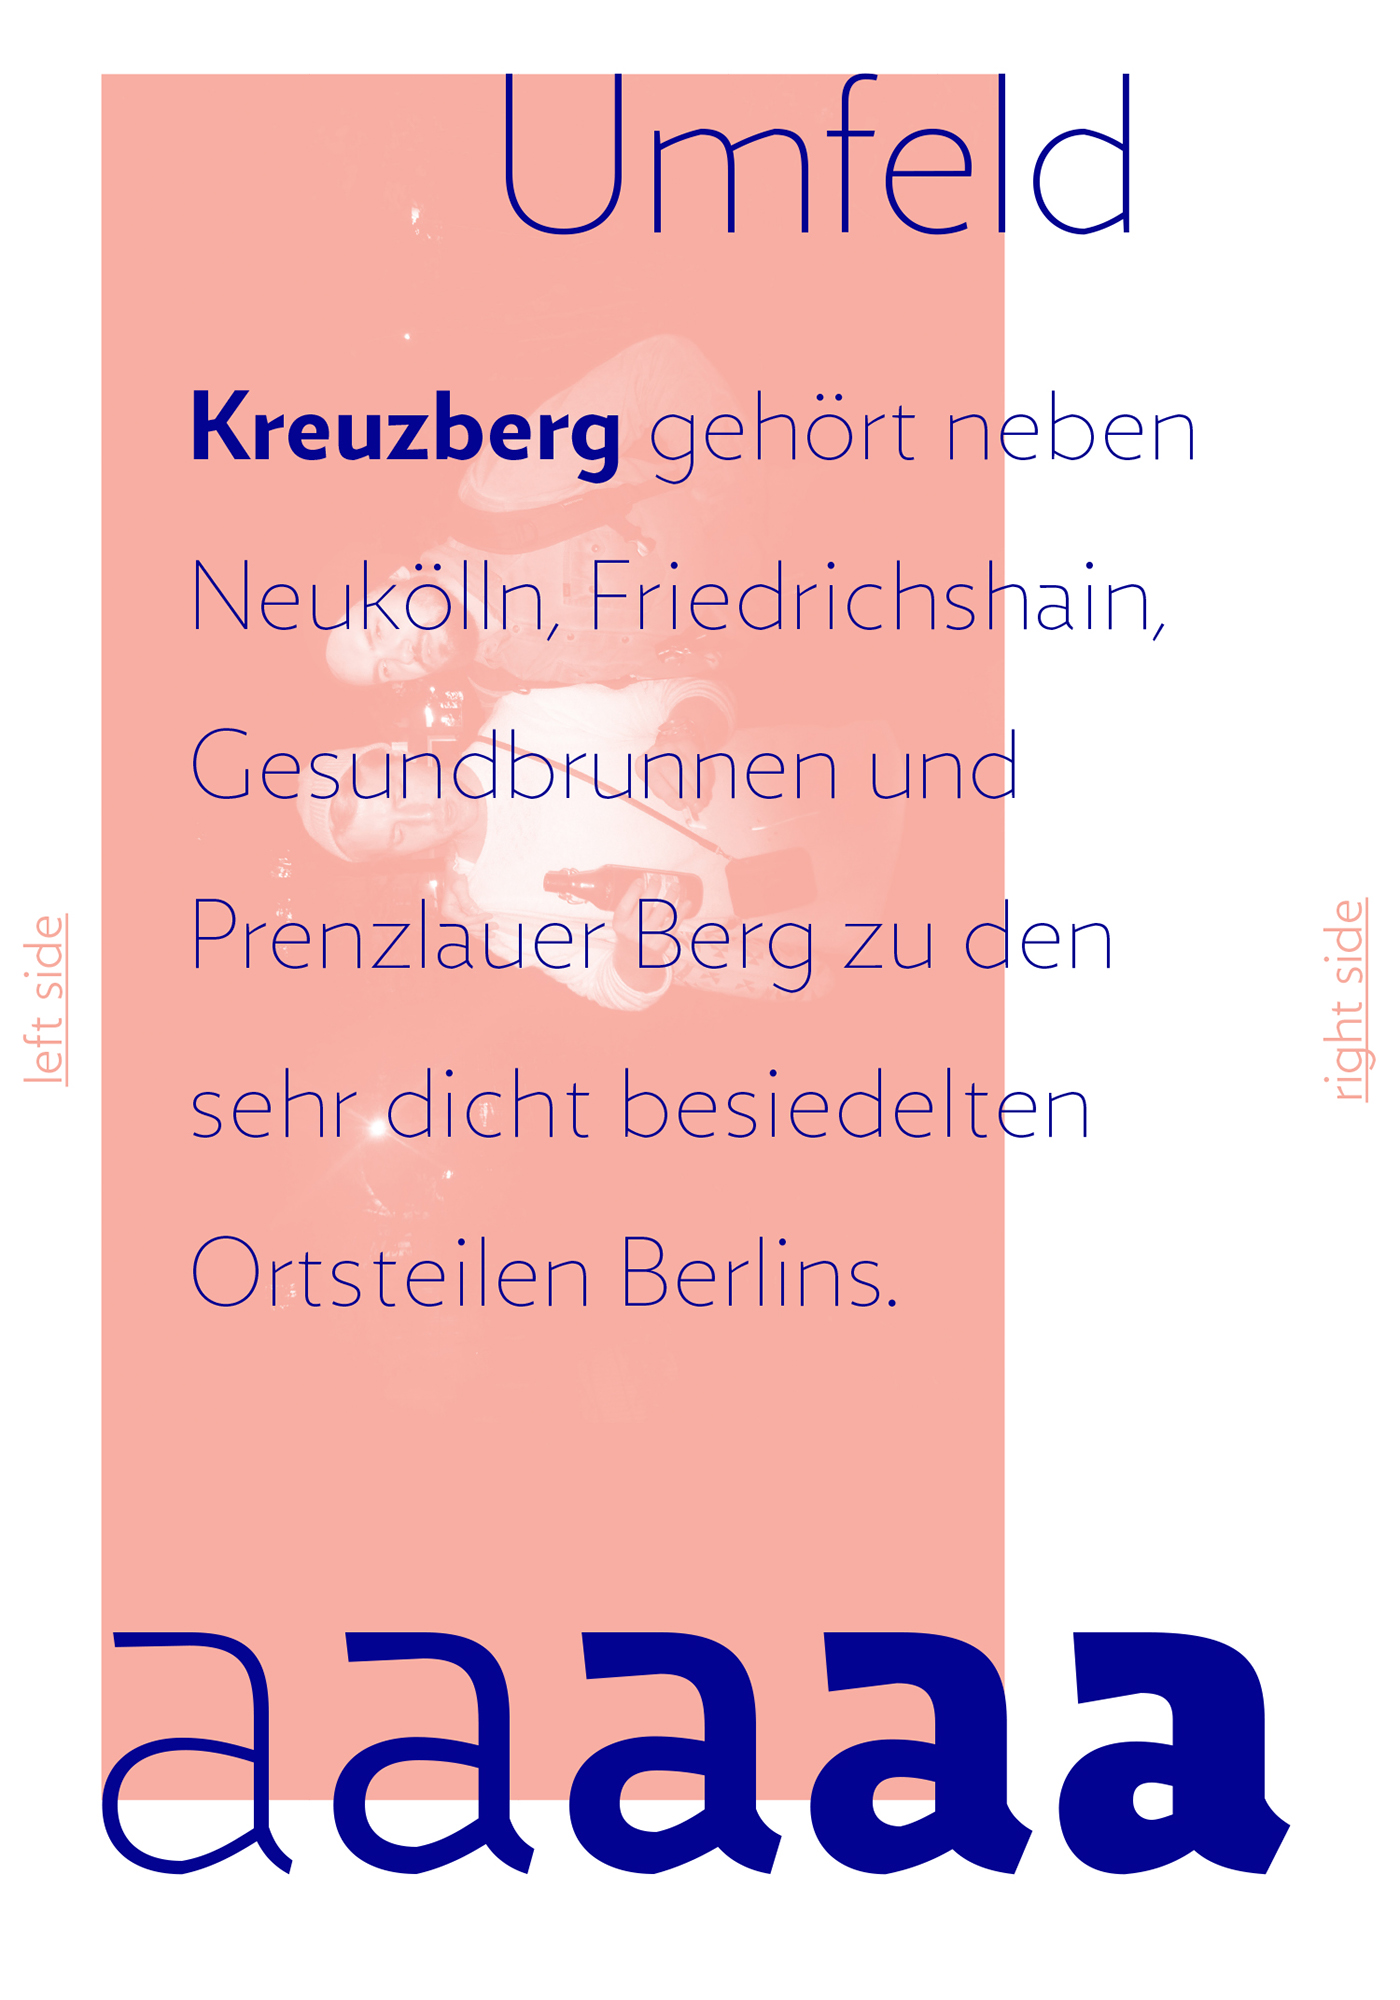 zigfrid borutta MACHALSKI typo underground Hipster Gill sans warsaw city trendlist berlin Style trip poster